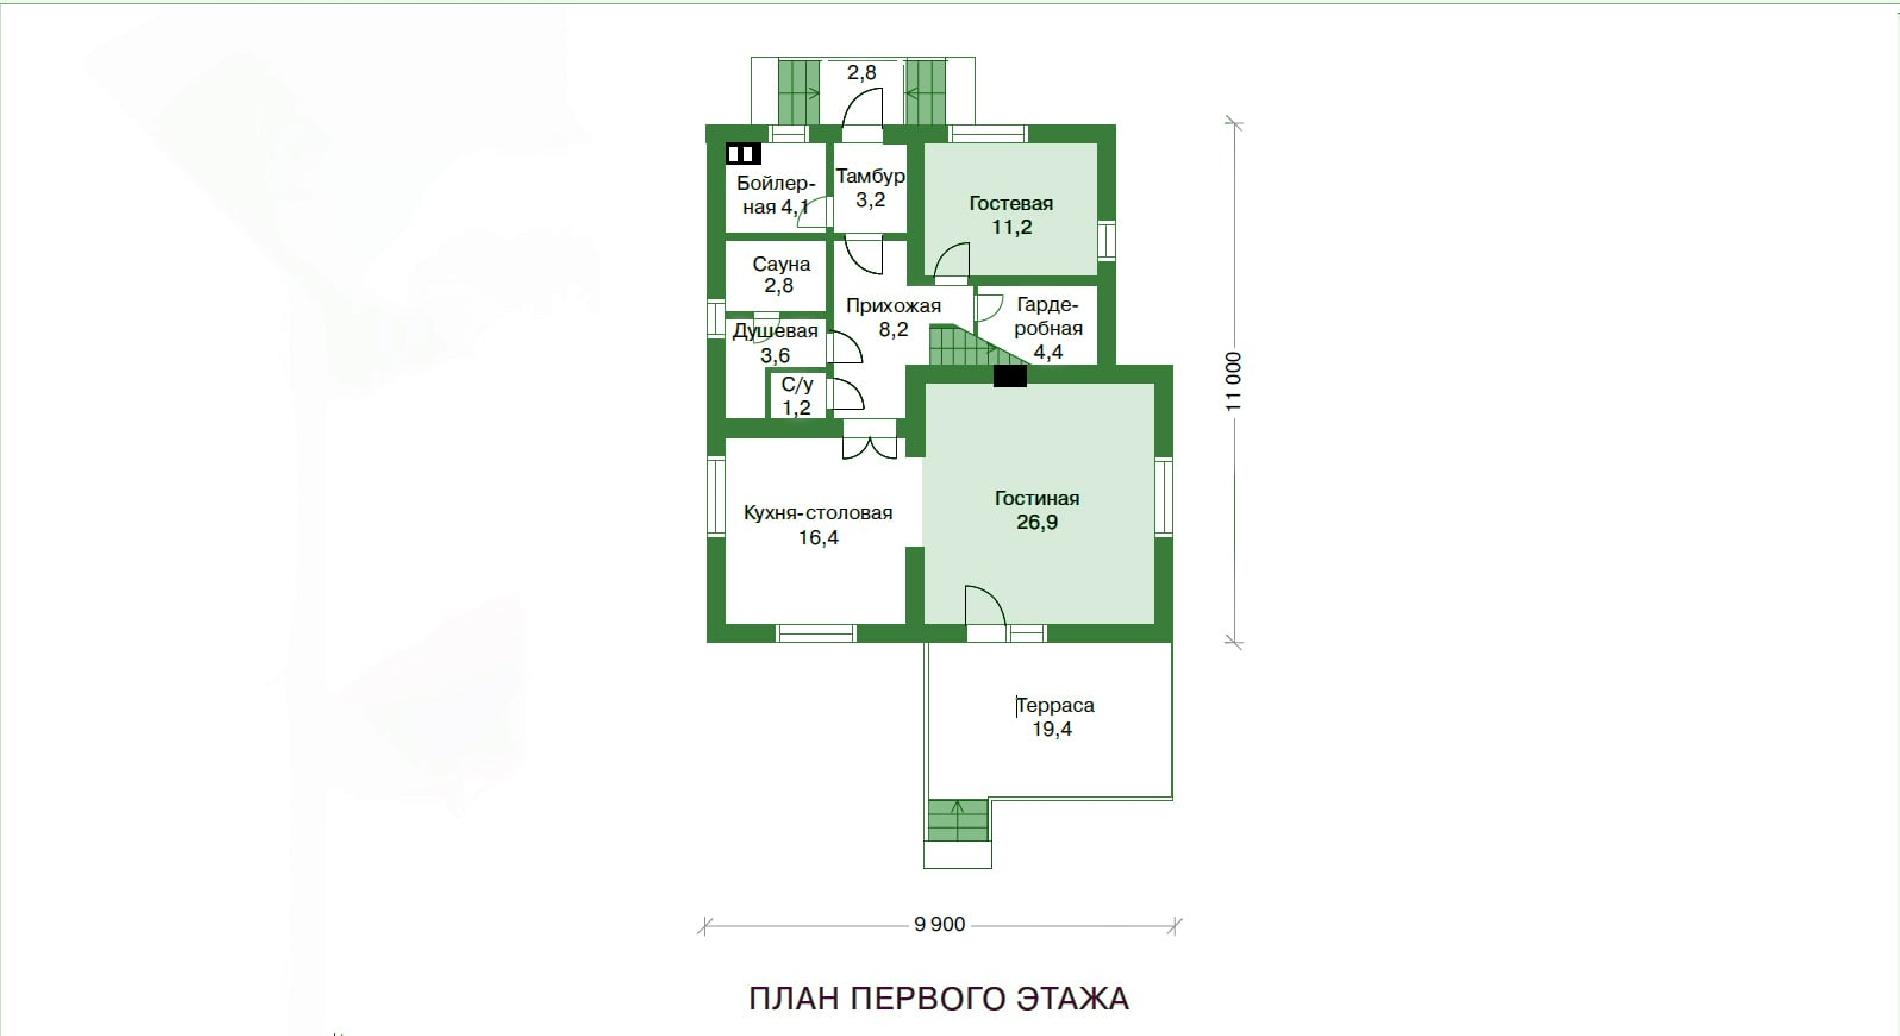 Планировка проекта дома №br-151 br-151_p1-min.jpg